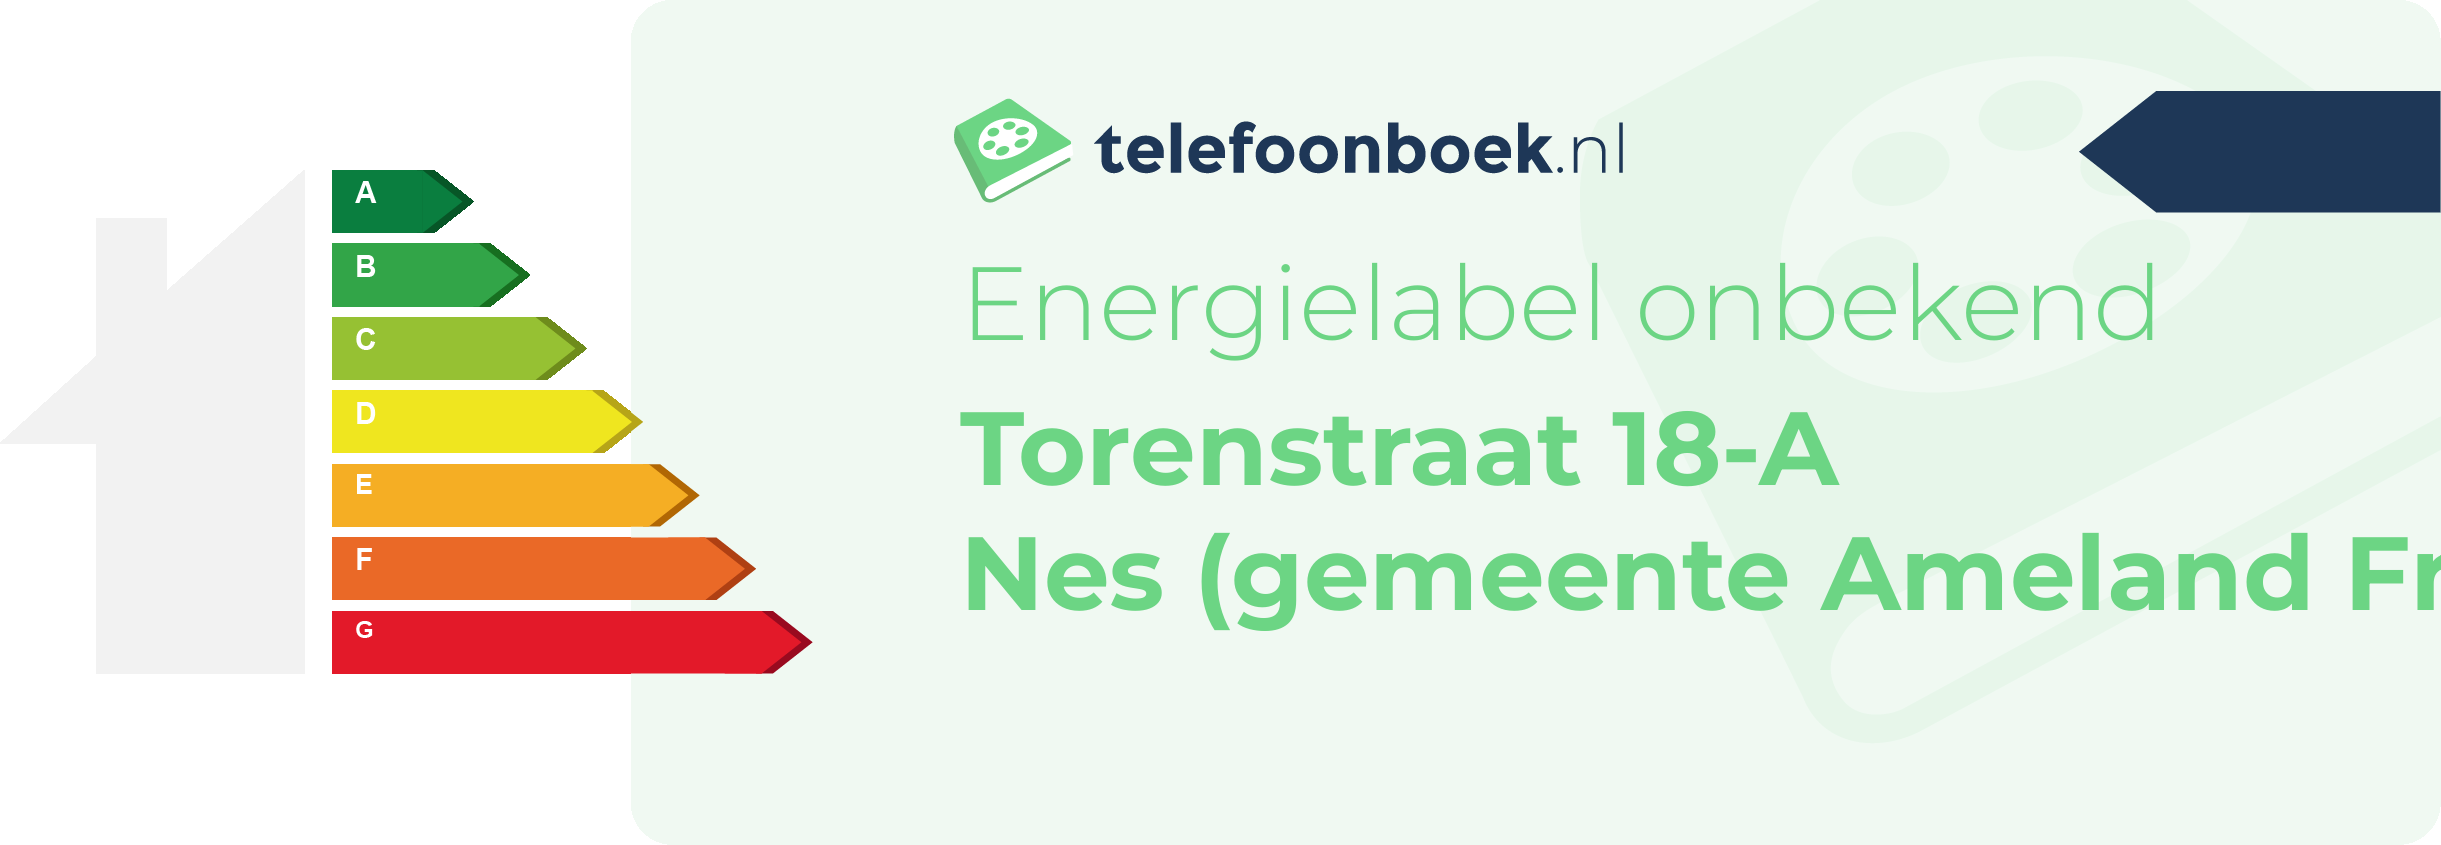 Energielabel Torenstraat 18-A Nes (gemeente Ameland Friesland)